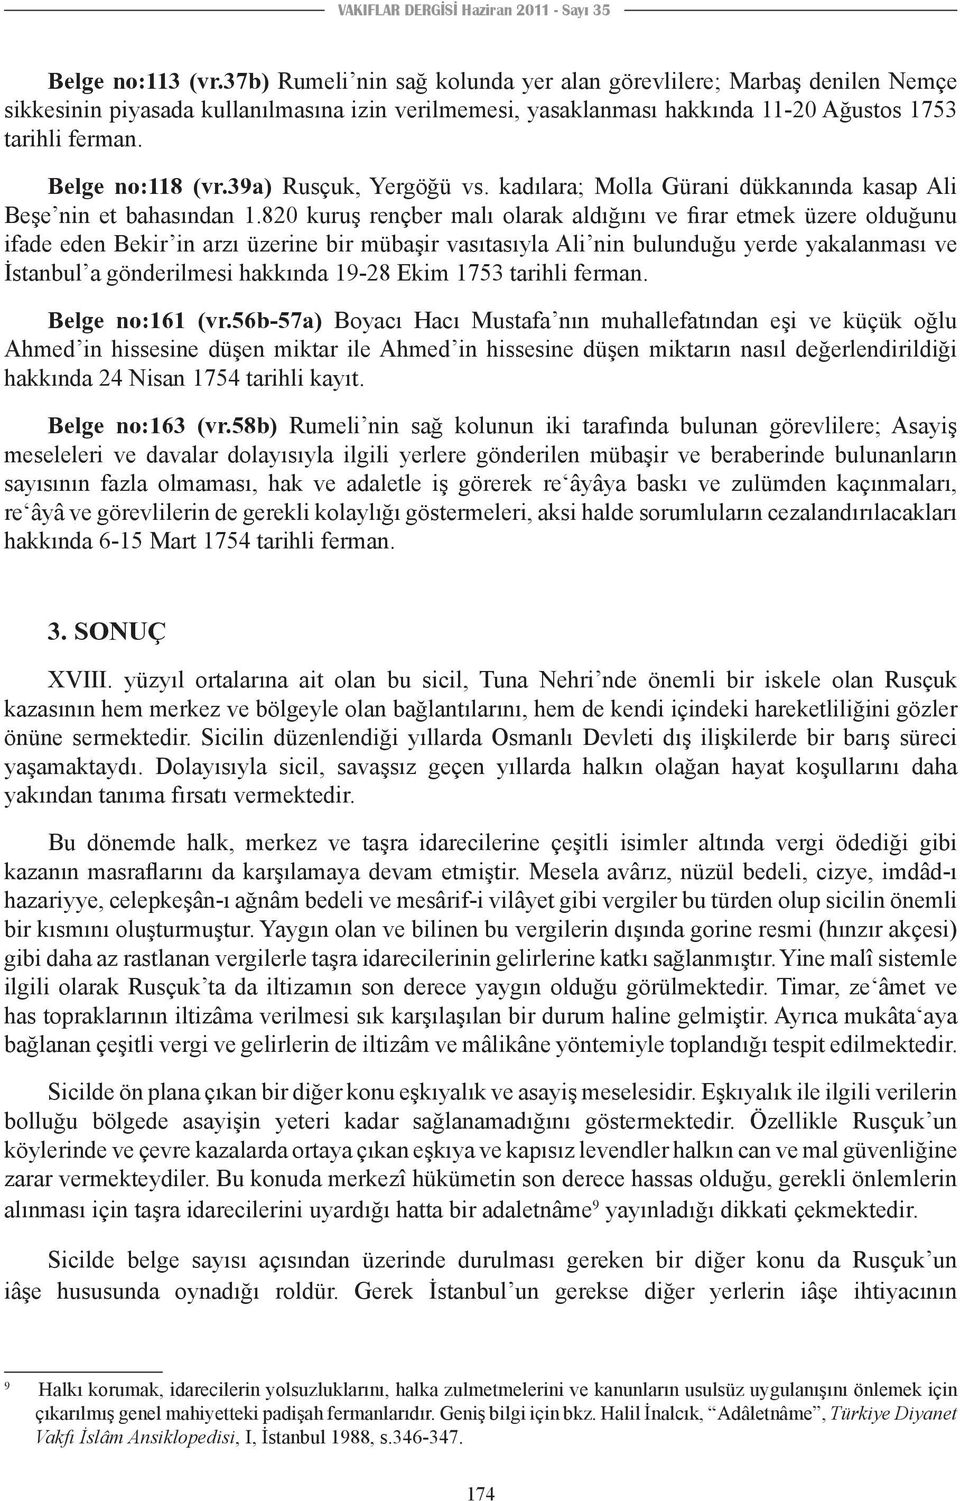 39a) Rusçuk, Yergöğü vs. kadılara; Molla Gürani dükkanında kasap Ali Beşe nin et bahasından 1.